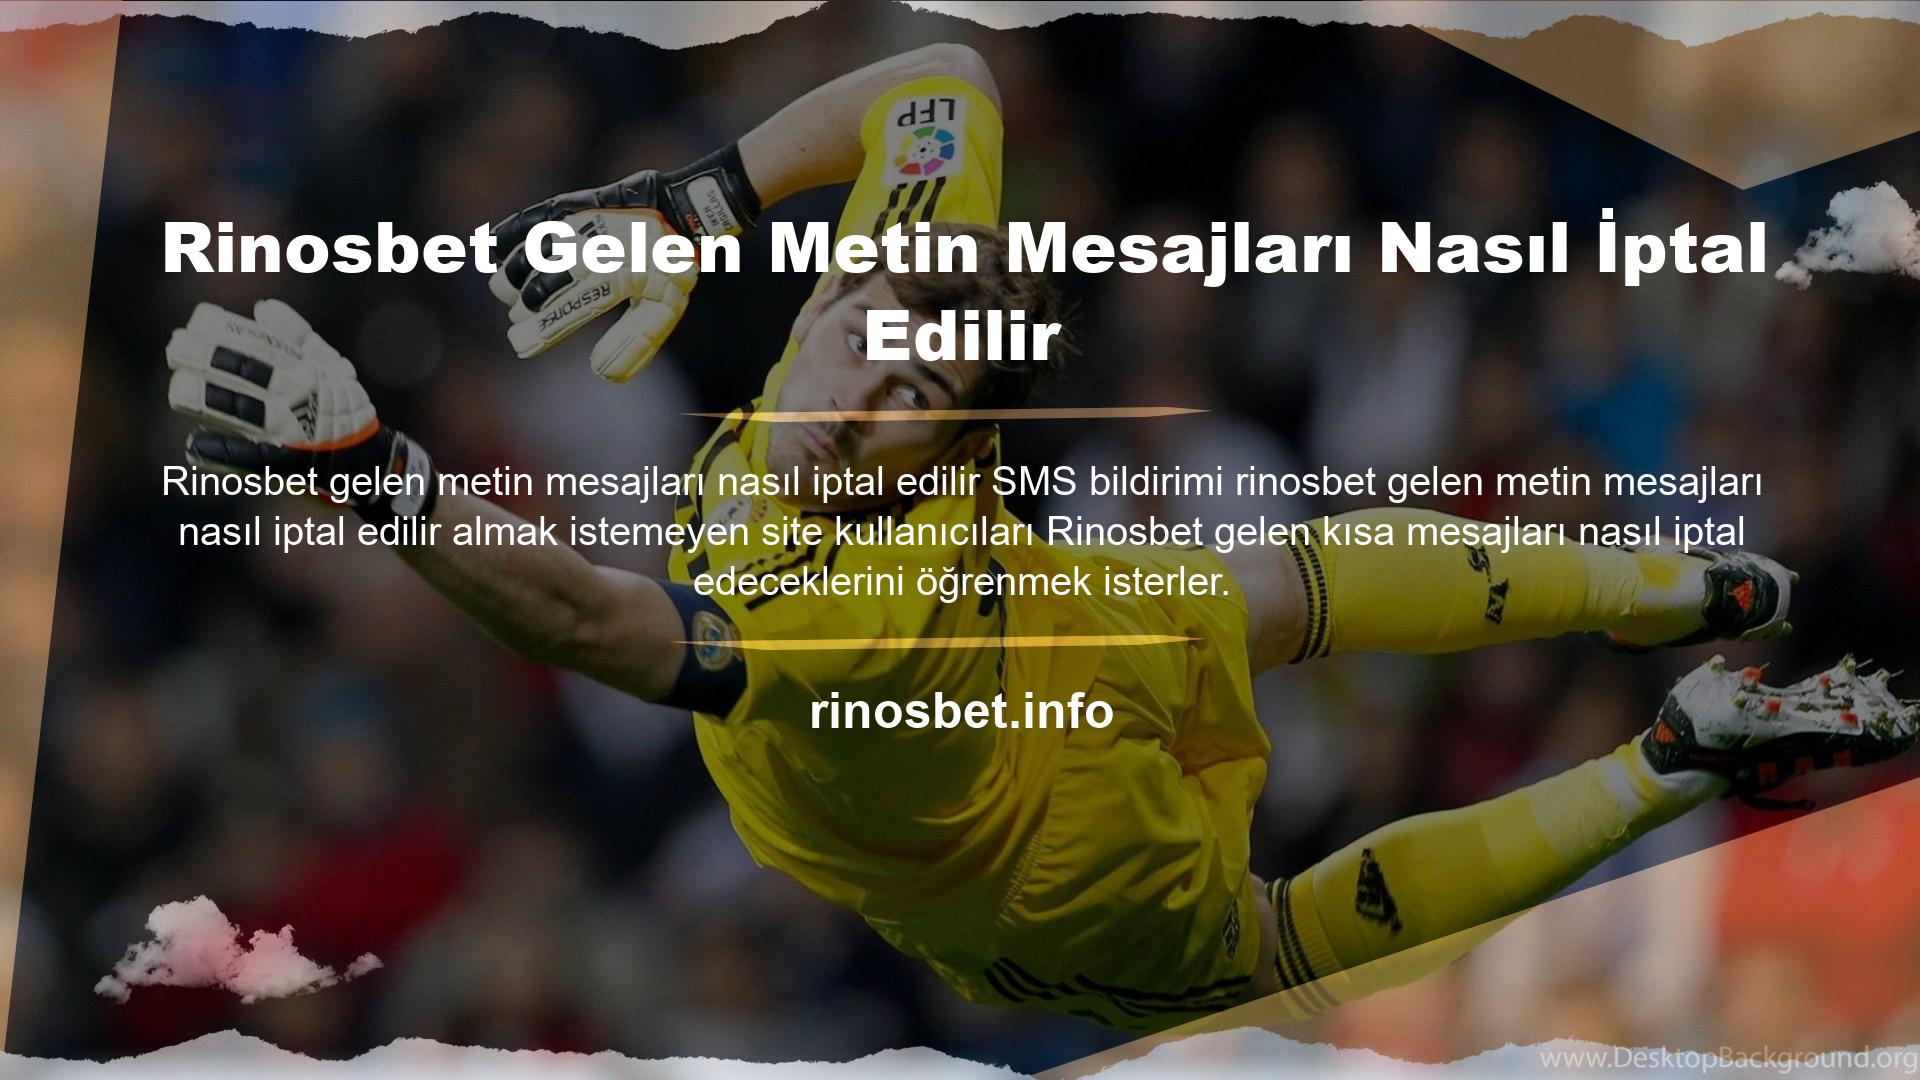 Rinosbet web sitesi, Türk bahis pazarına girdiğinden beri adından söz ettiren bir bahis sitesidir